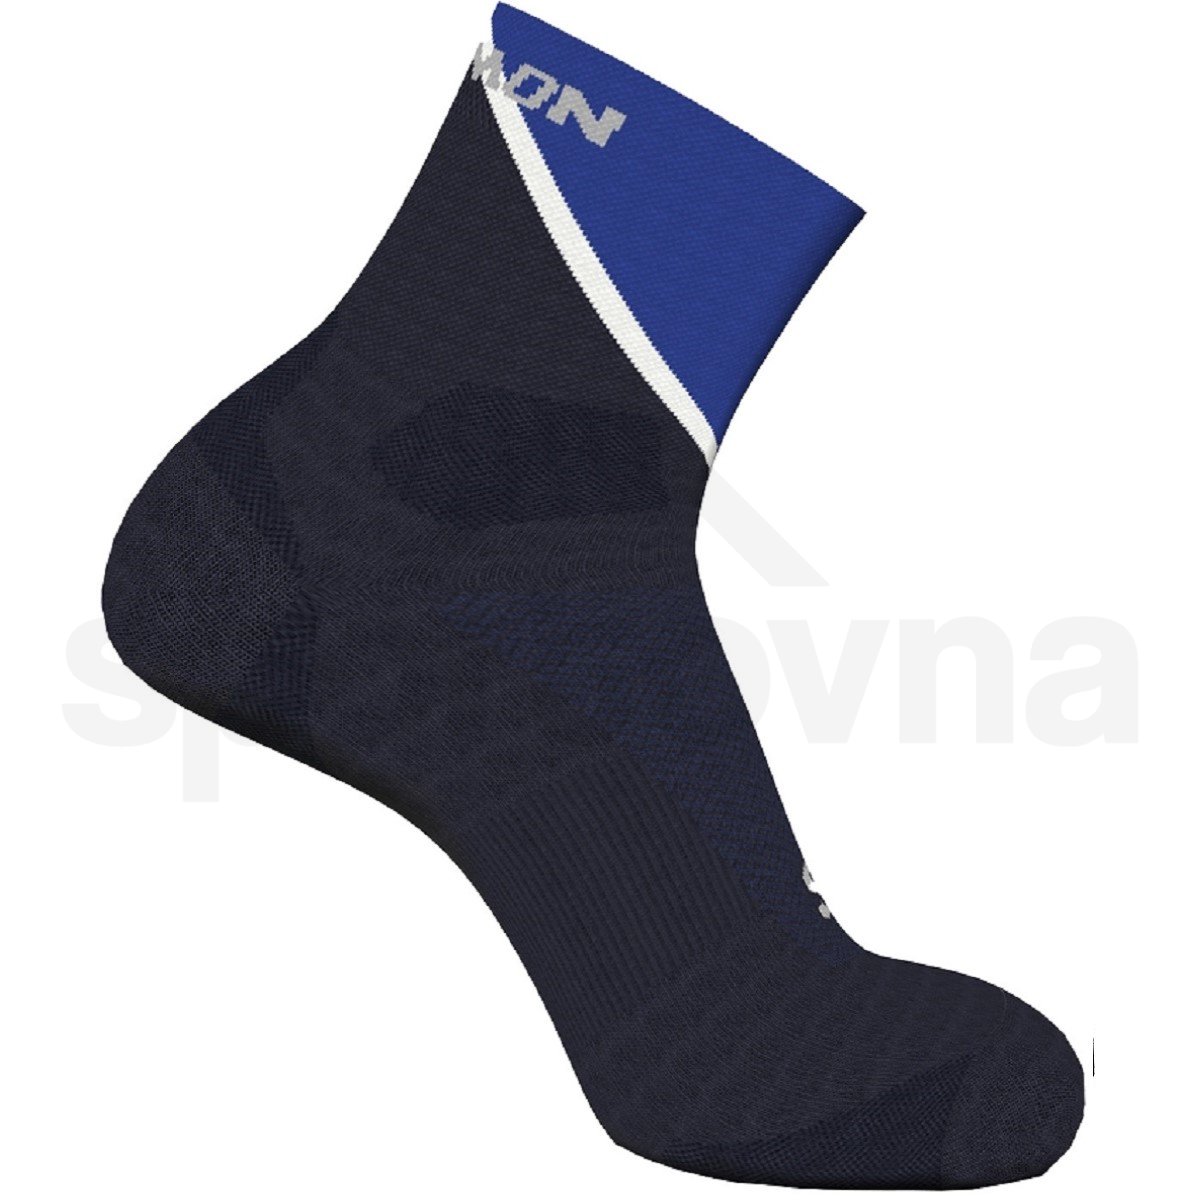 Ponožky Salomon Pulse Ankle - modrá/černá